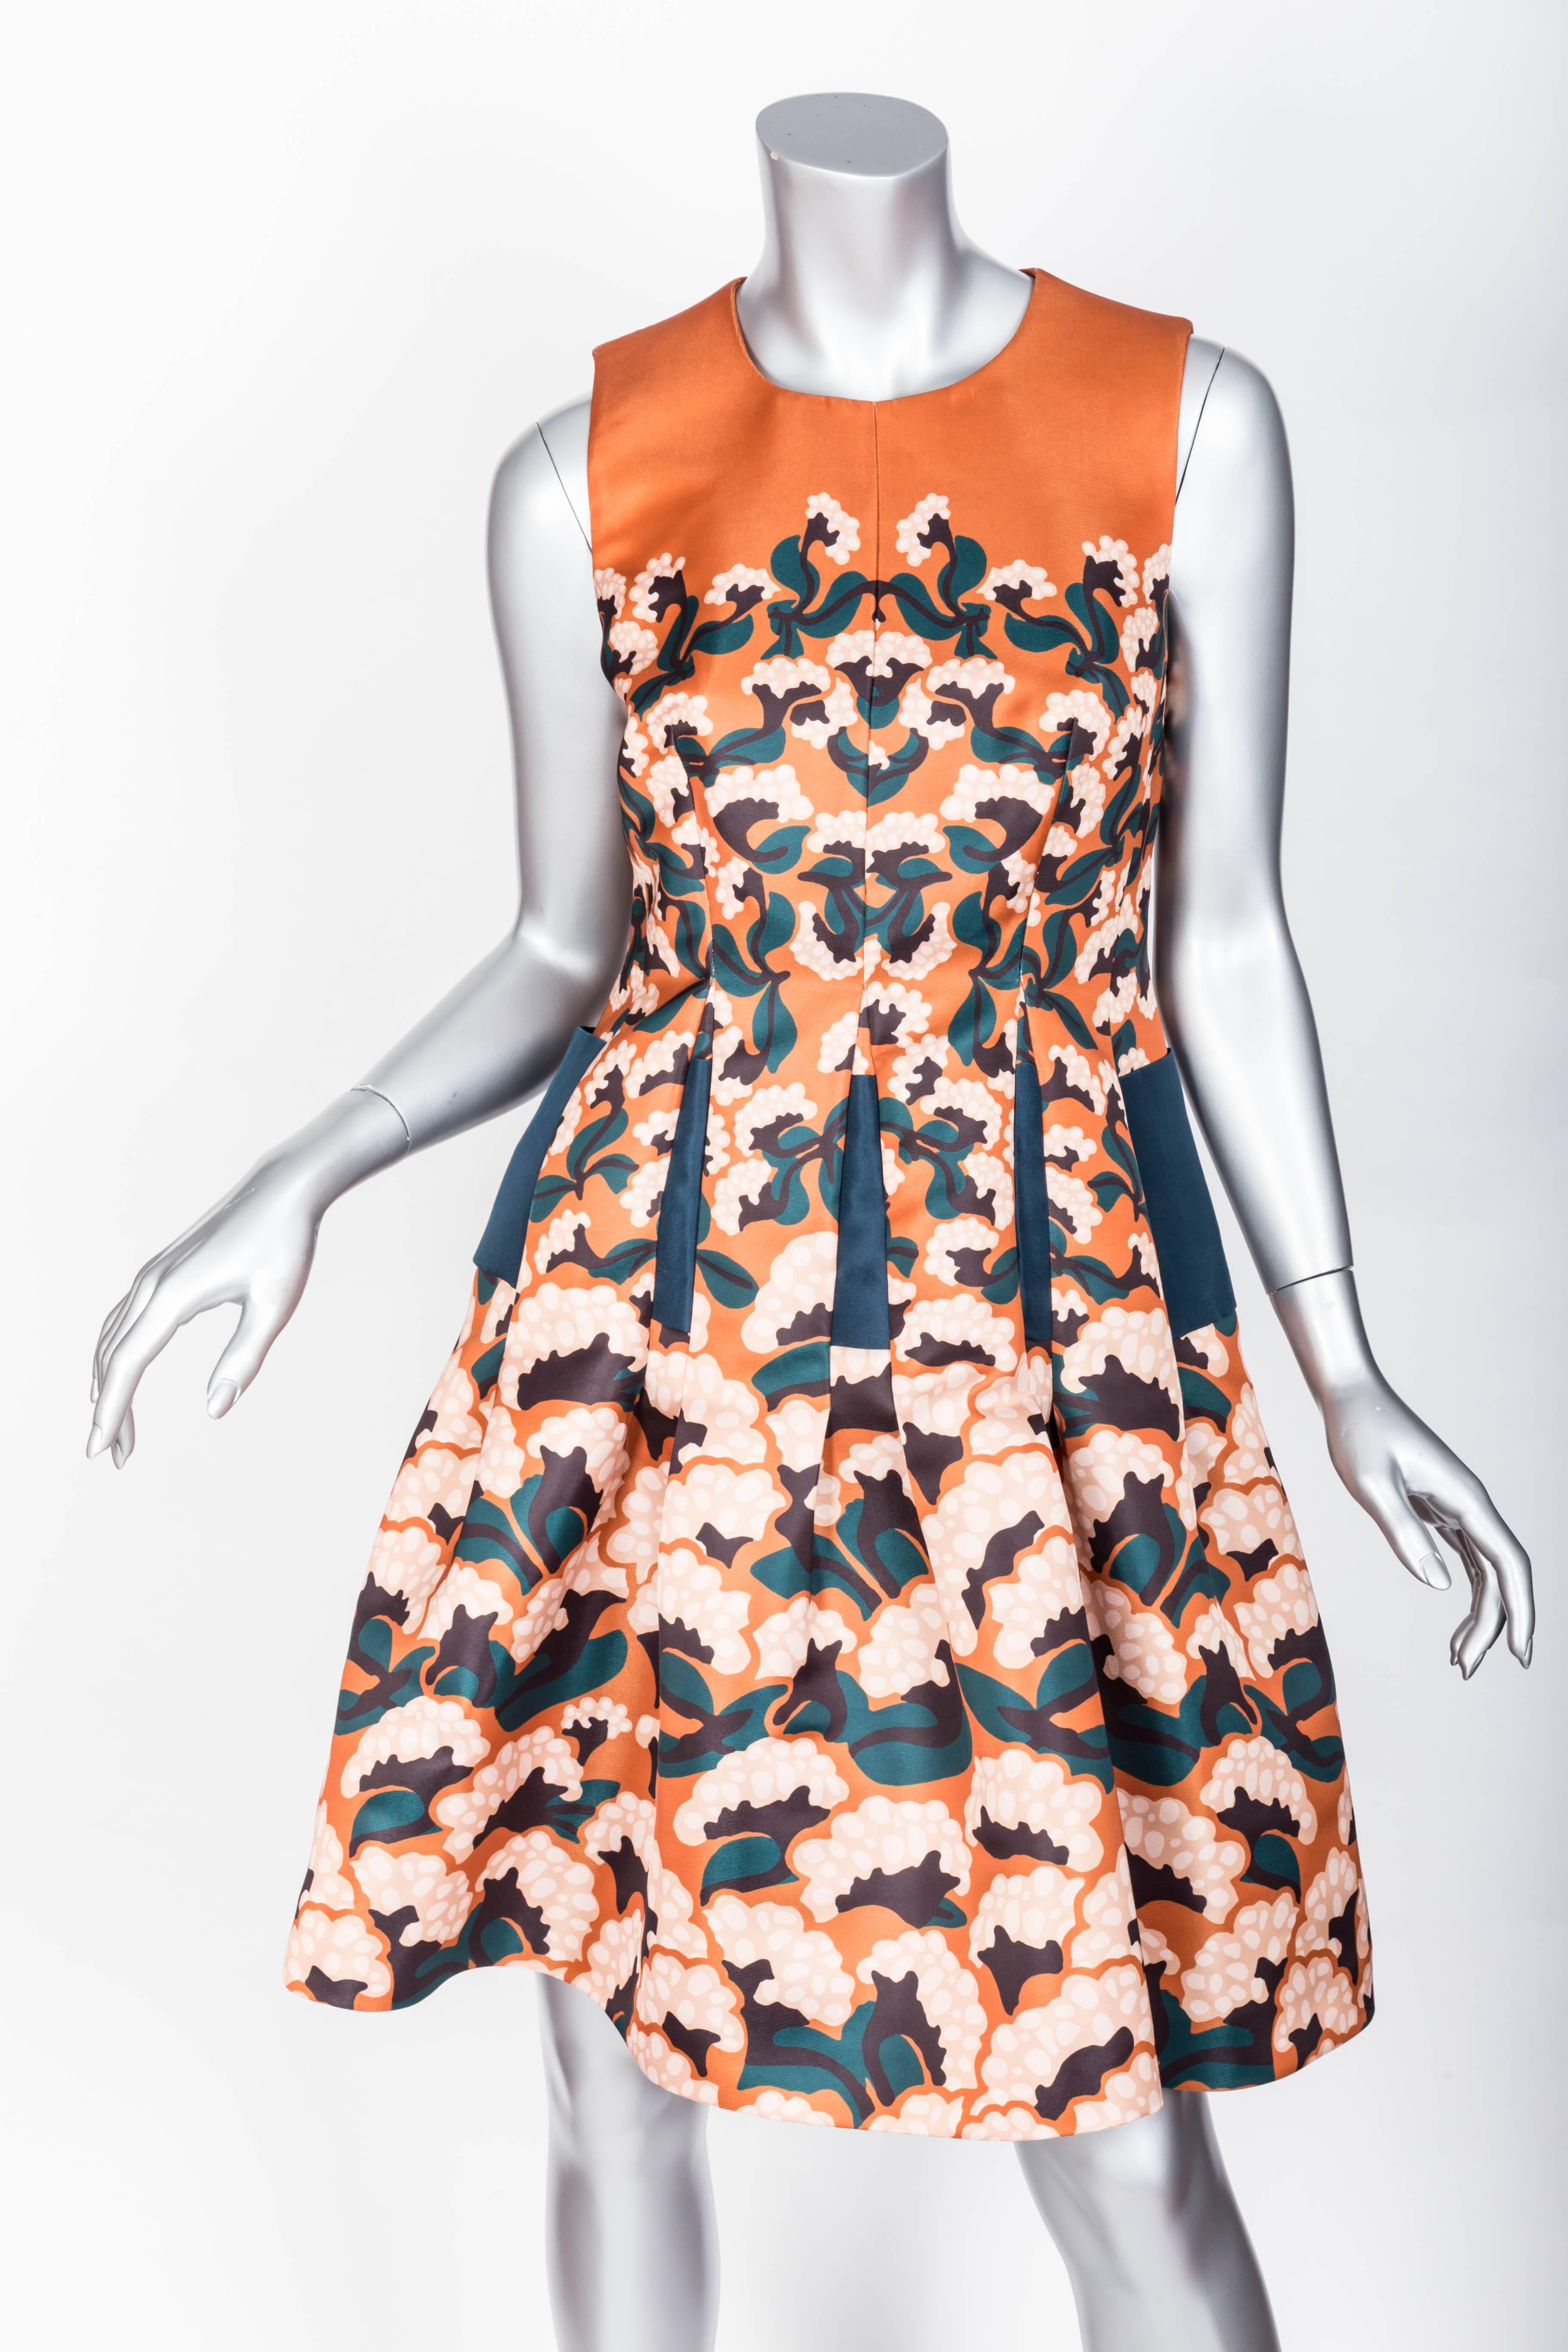 Thakoon Floral Print Dress Size 2 2